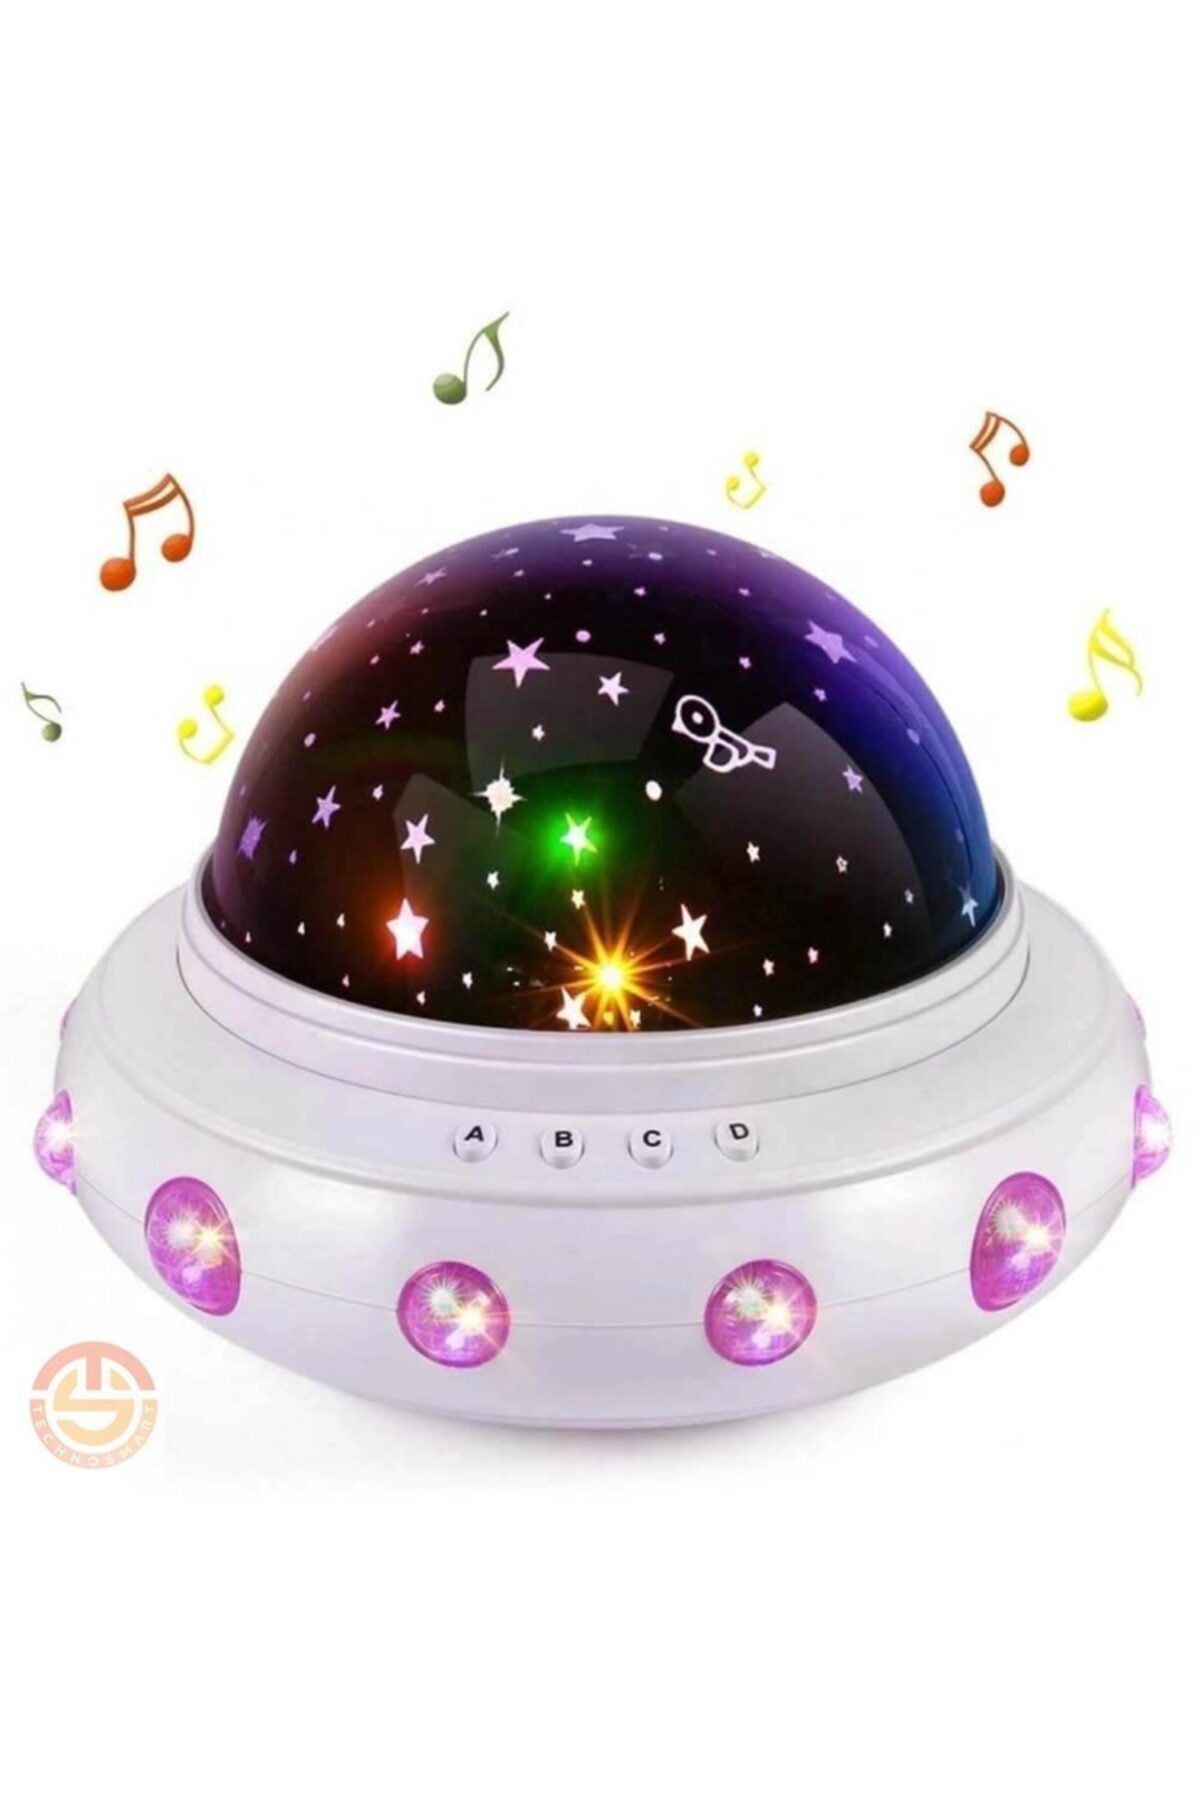 TechnoSmart Müzikli Renkli Ve Dönen Star Master Ufo Uzay Temalı Projeksiyon Gece Lambası Usbli